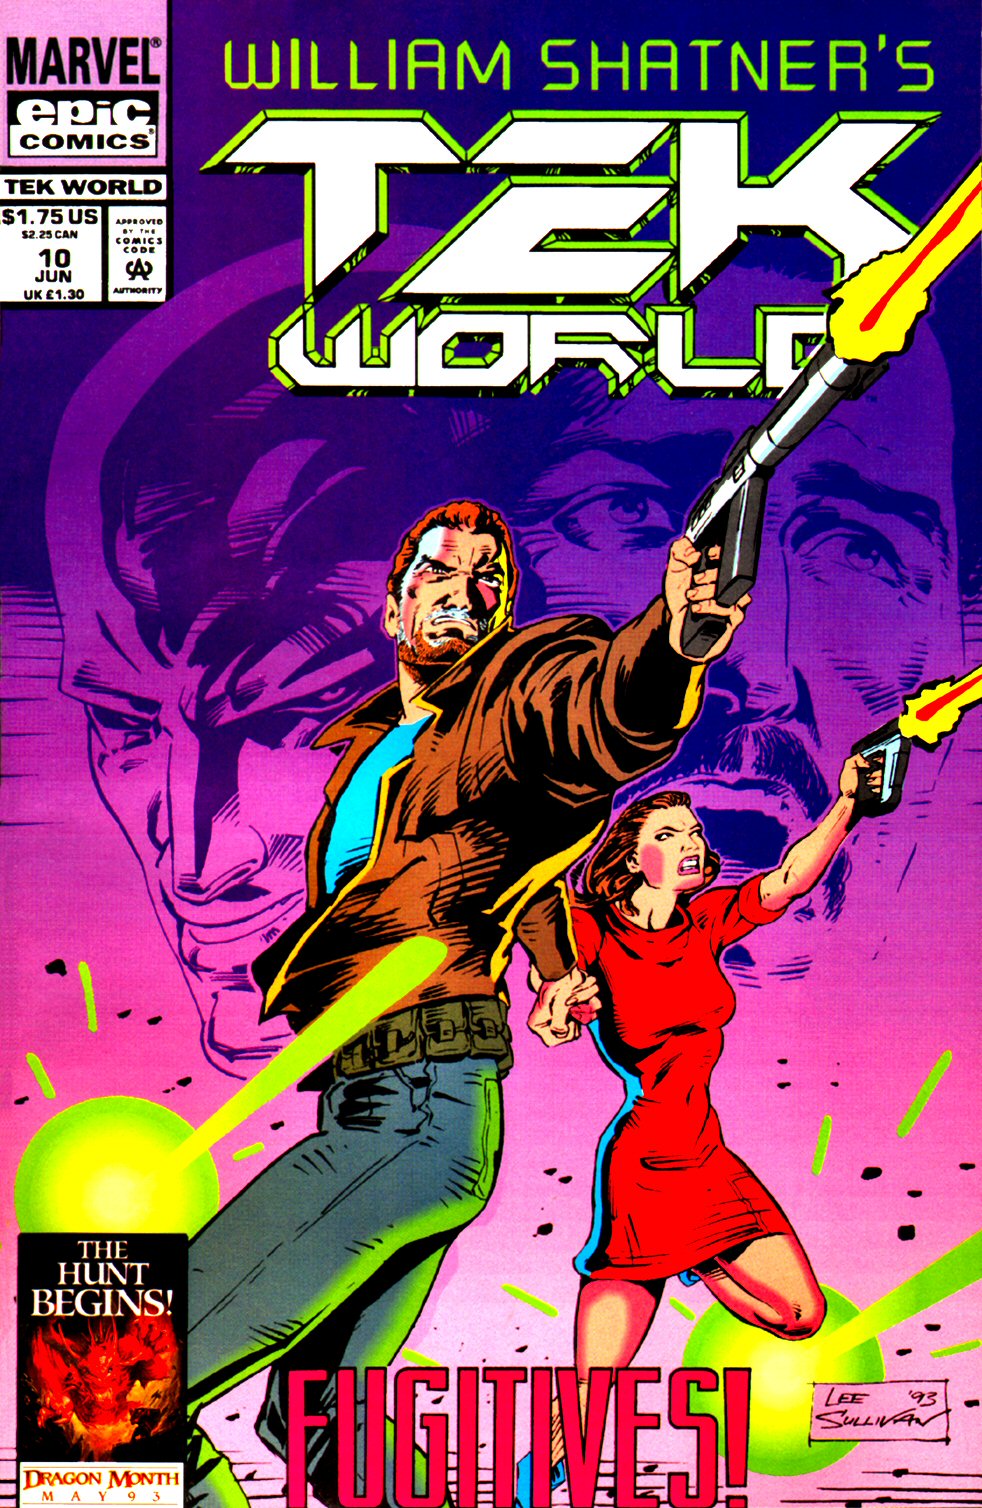 Read online TekWorld comic -  Issue #10 - 1